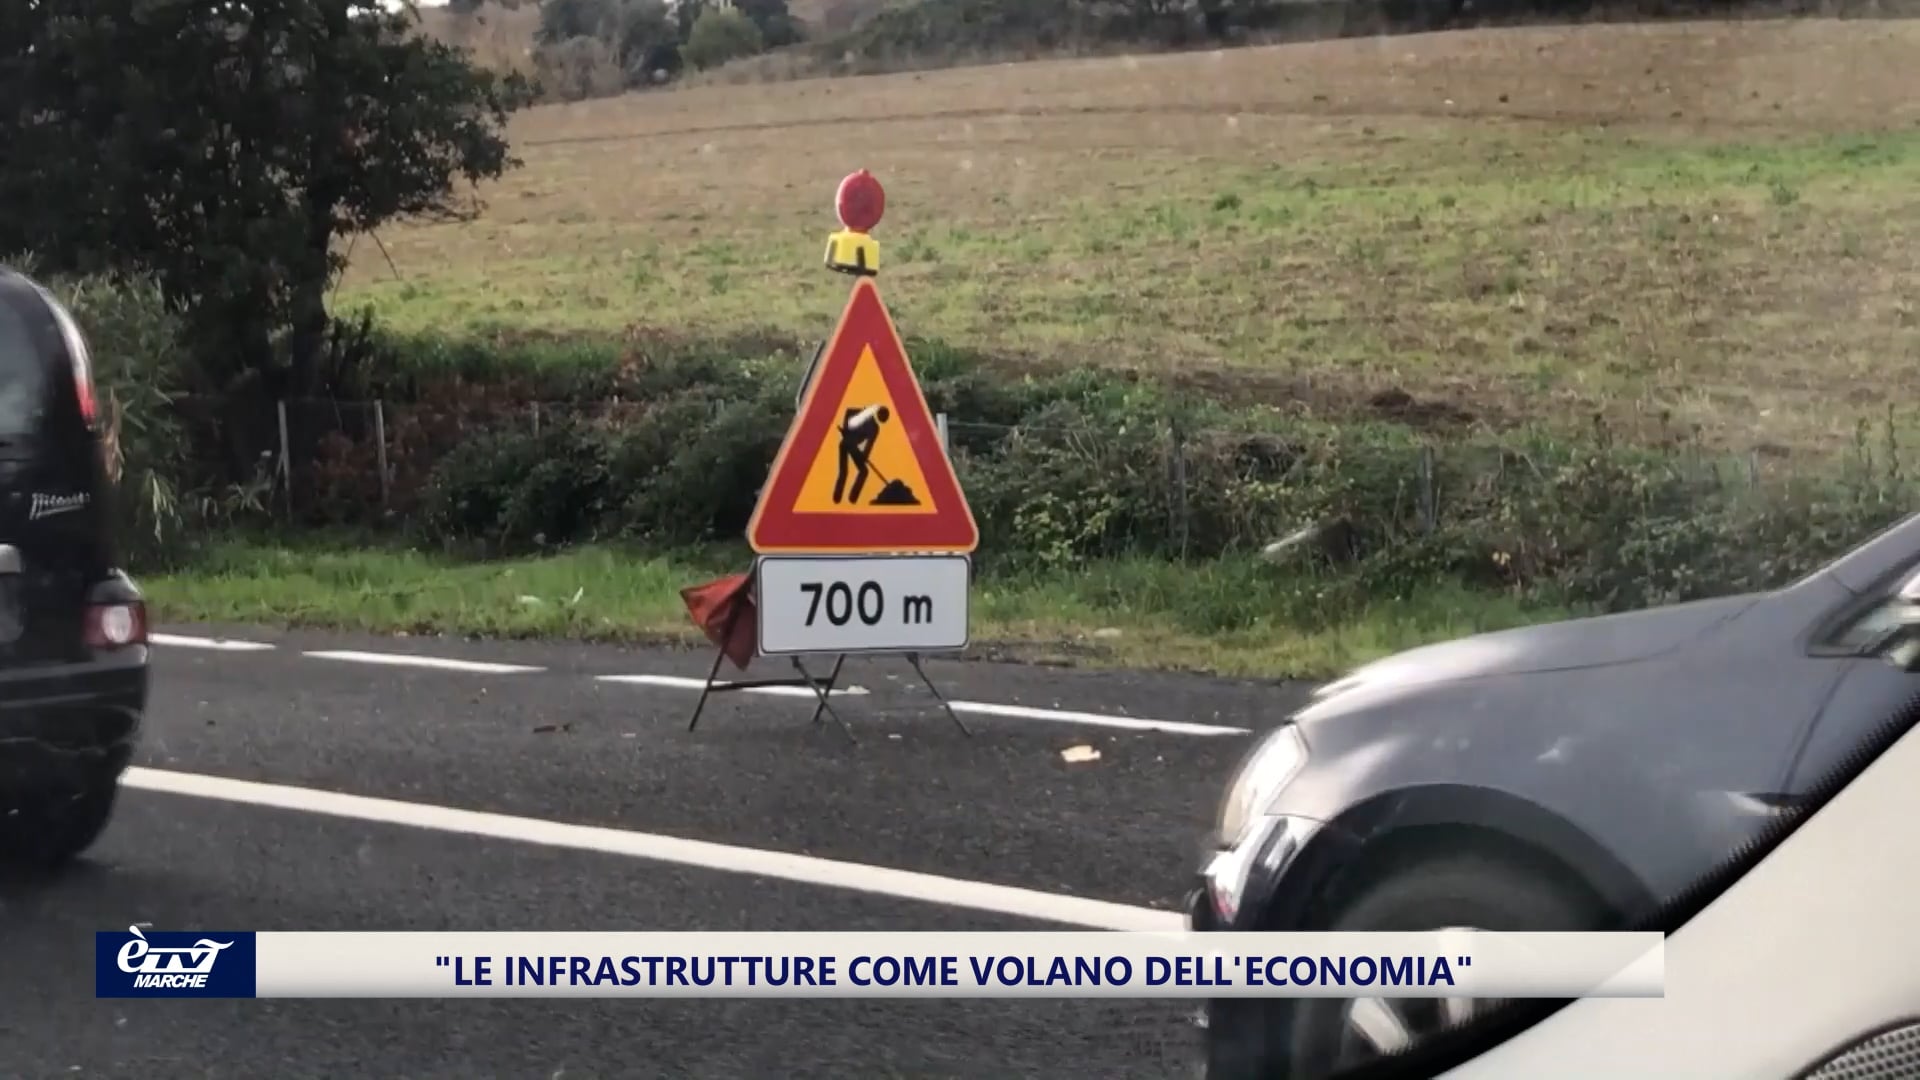 Le infrastrutture come volano dell'economia, l'appuntamento organizzato da Confartigianato - VIDEO